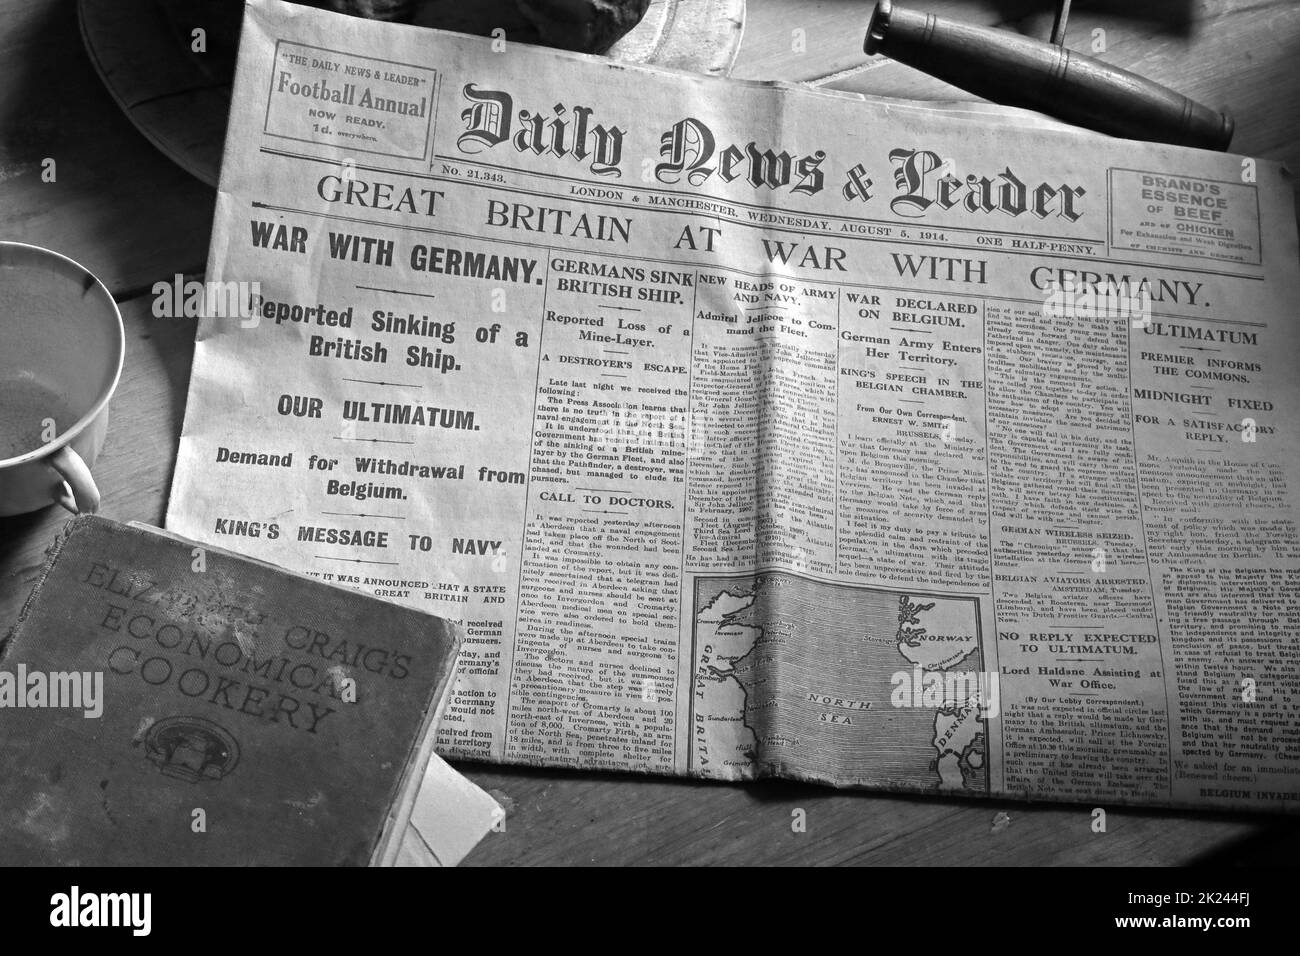 Daily News & Reader, Grande-Bretagne en guerre avec l'Allemagne, titre du vieux journal, a rapporté le naufrage du navire britannique, 05/08/1914 Banque D'Images